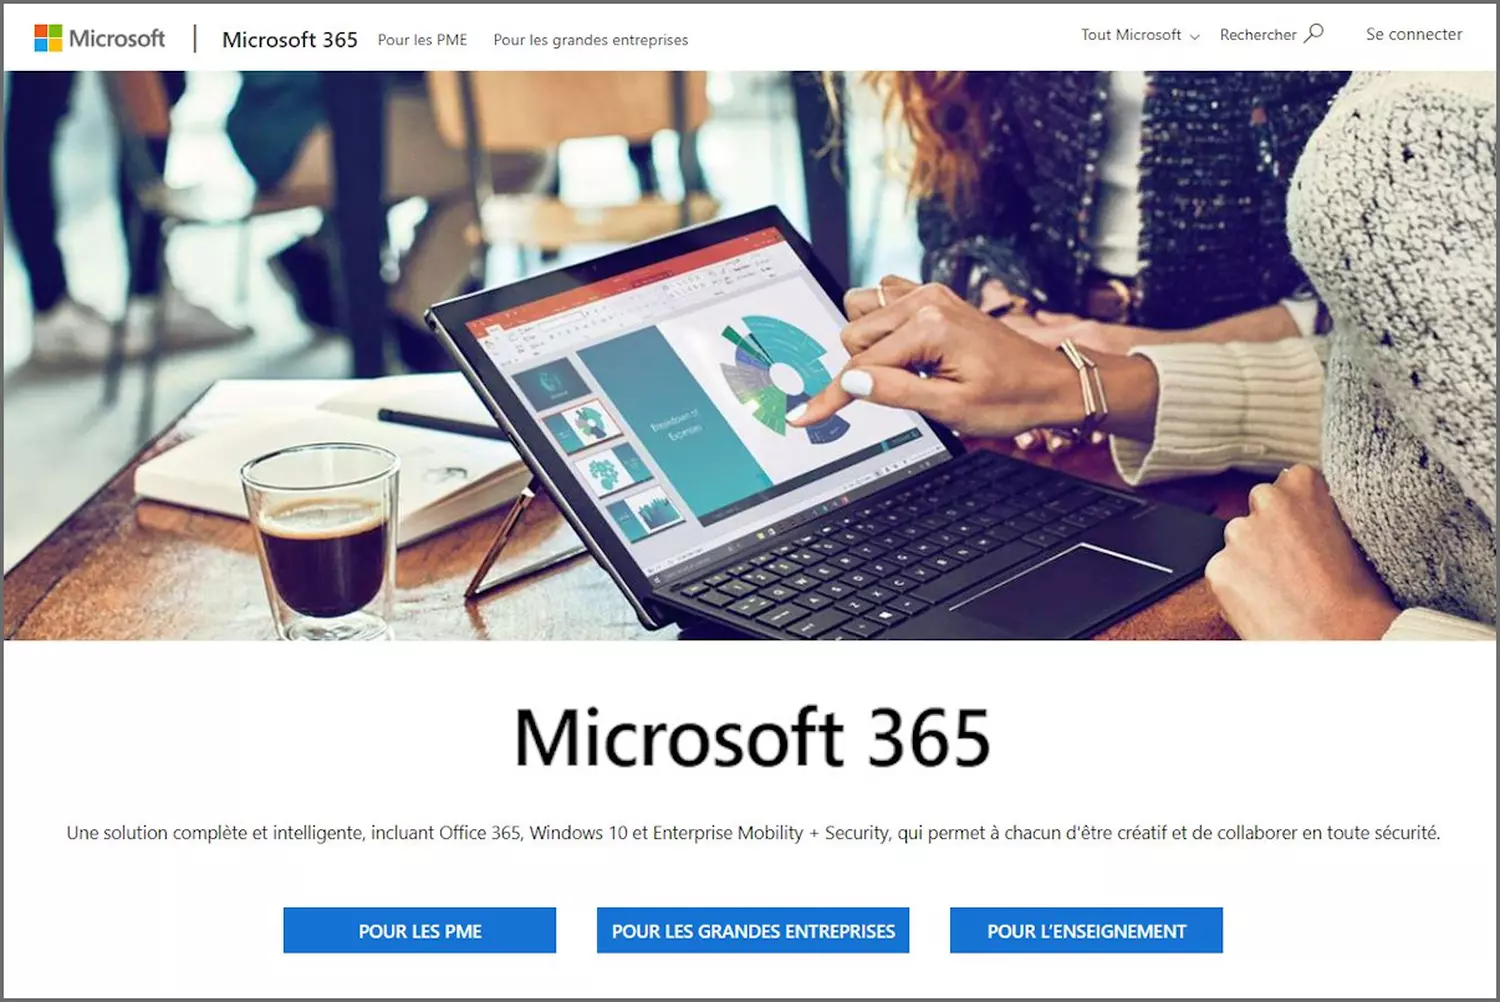 Quels sont les nouveautés et avantages de Microsoft 365 ?